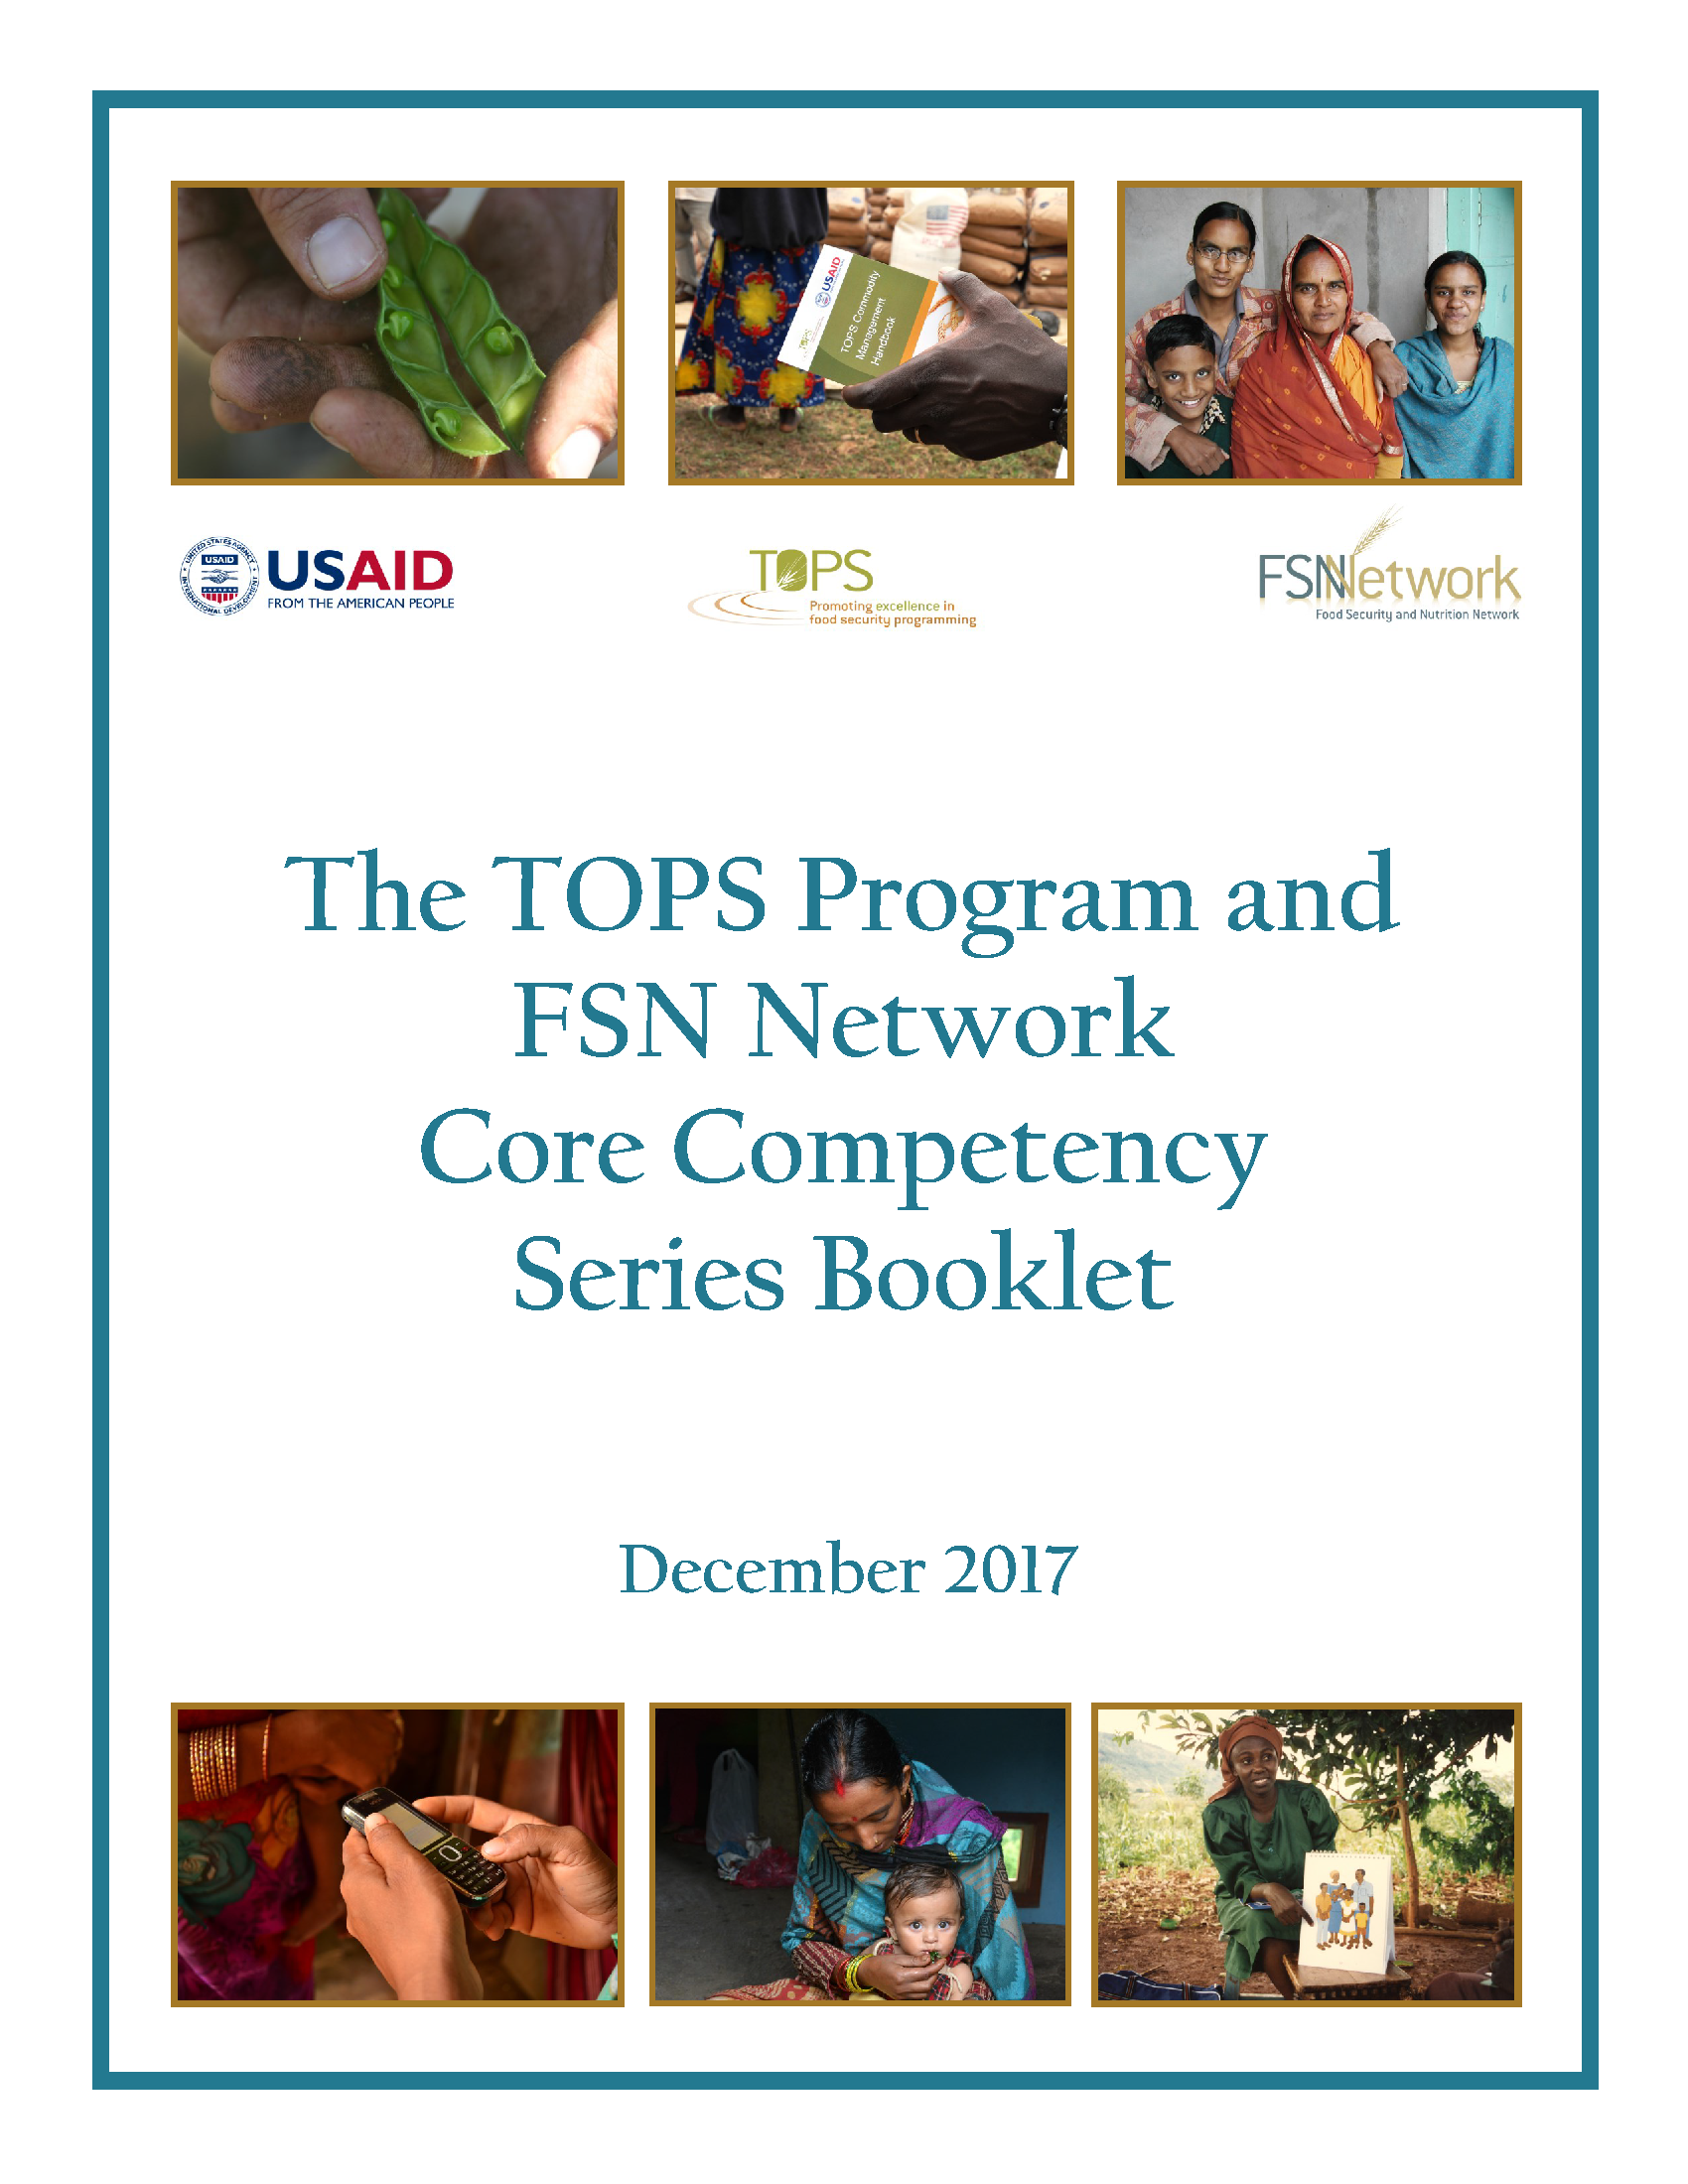 Page de couverture du programme TOPS et du livret de la série de compétences de base du réseau FSN